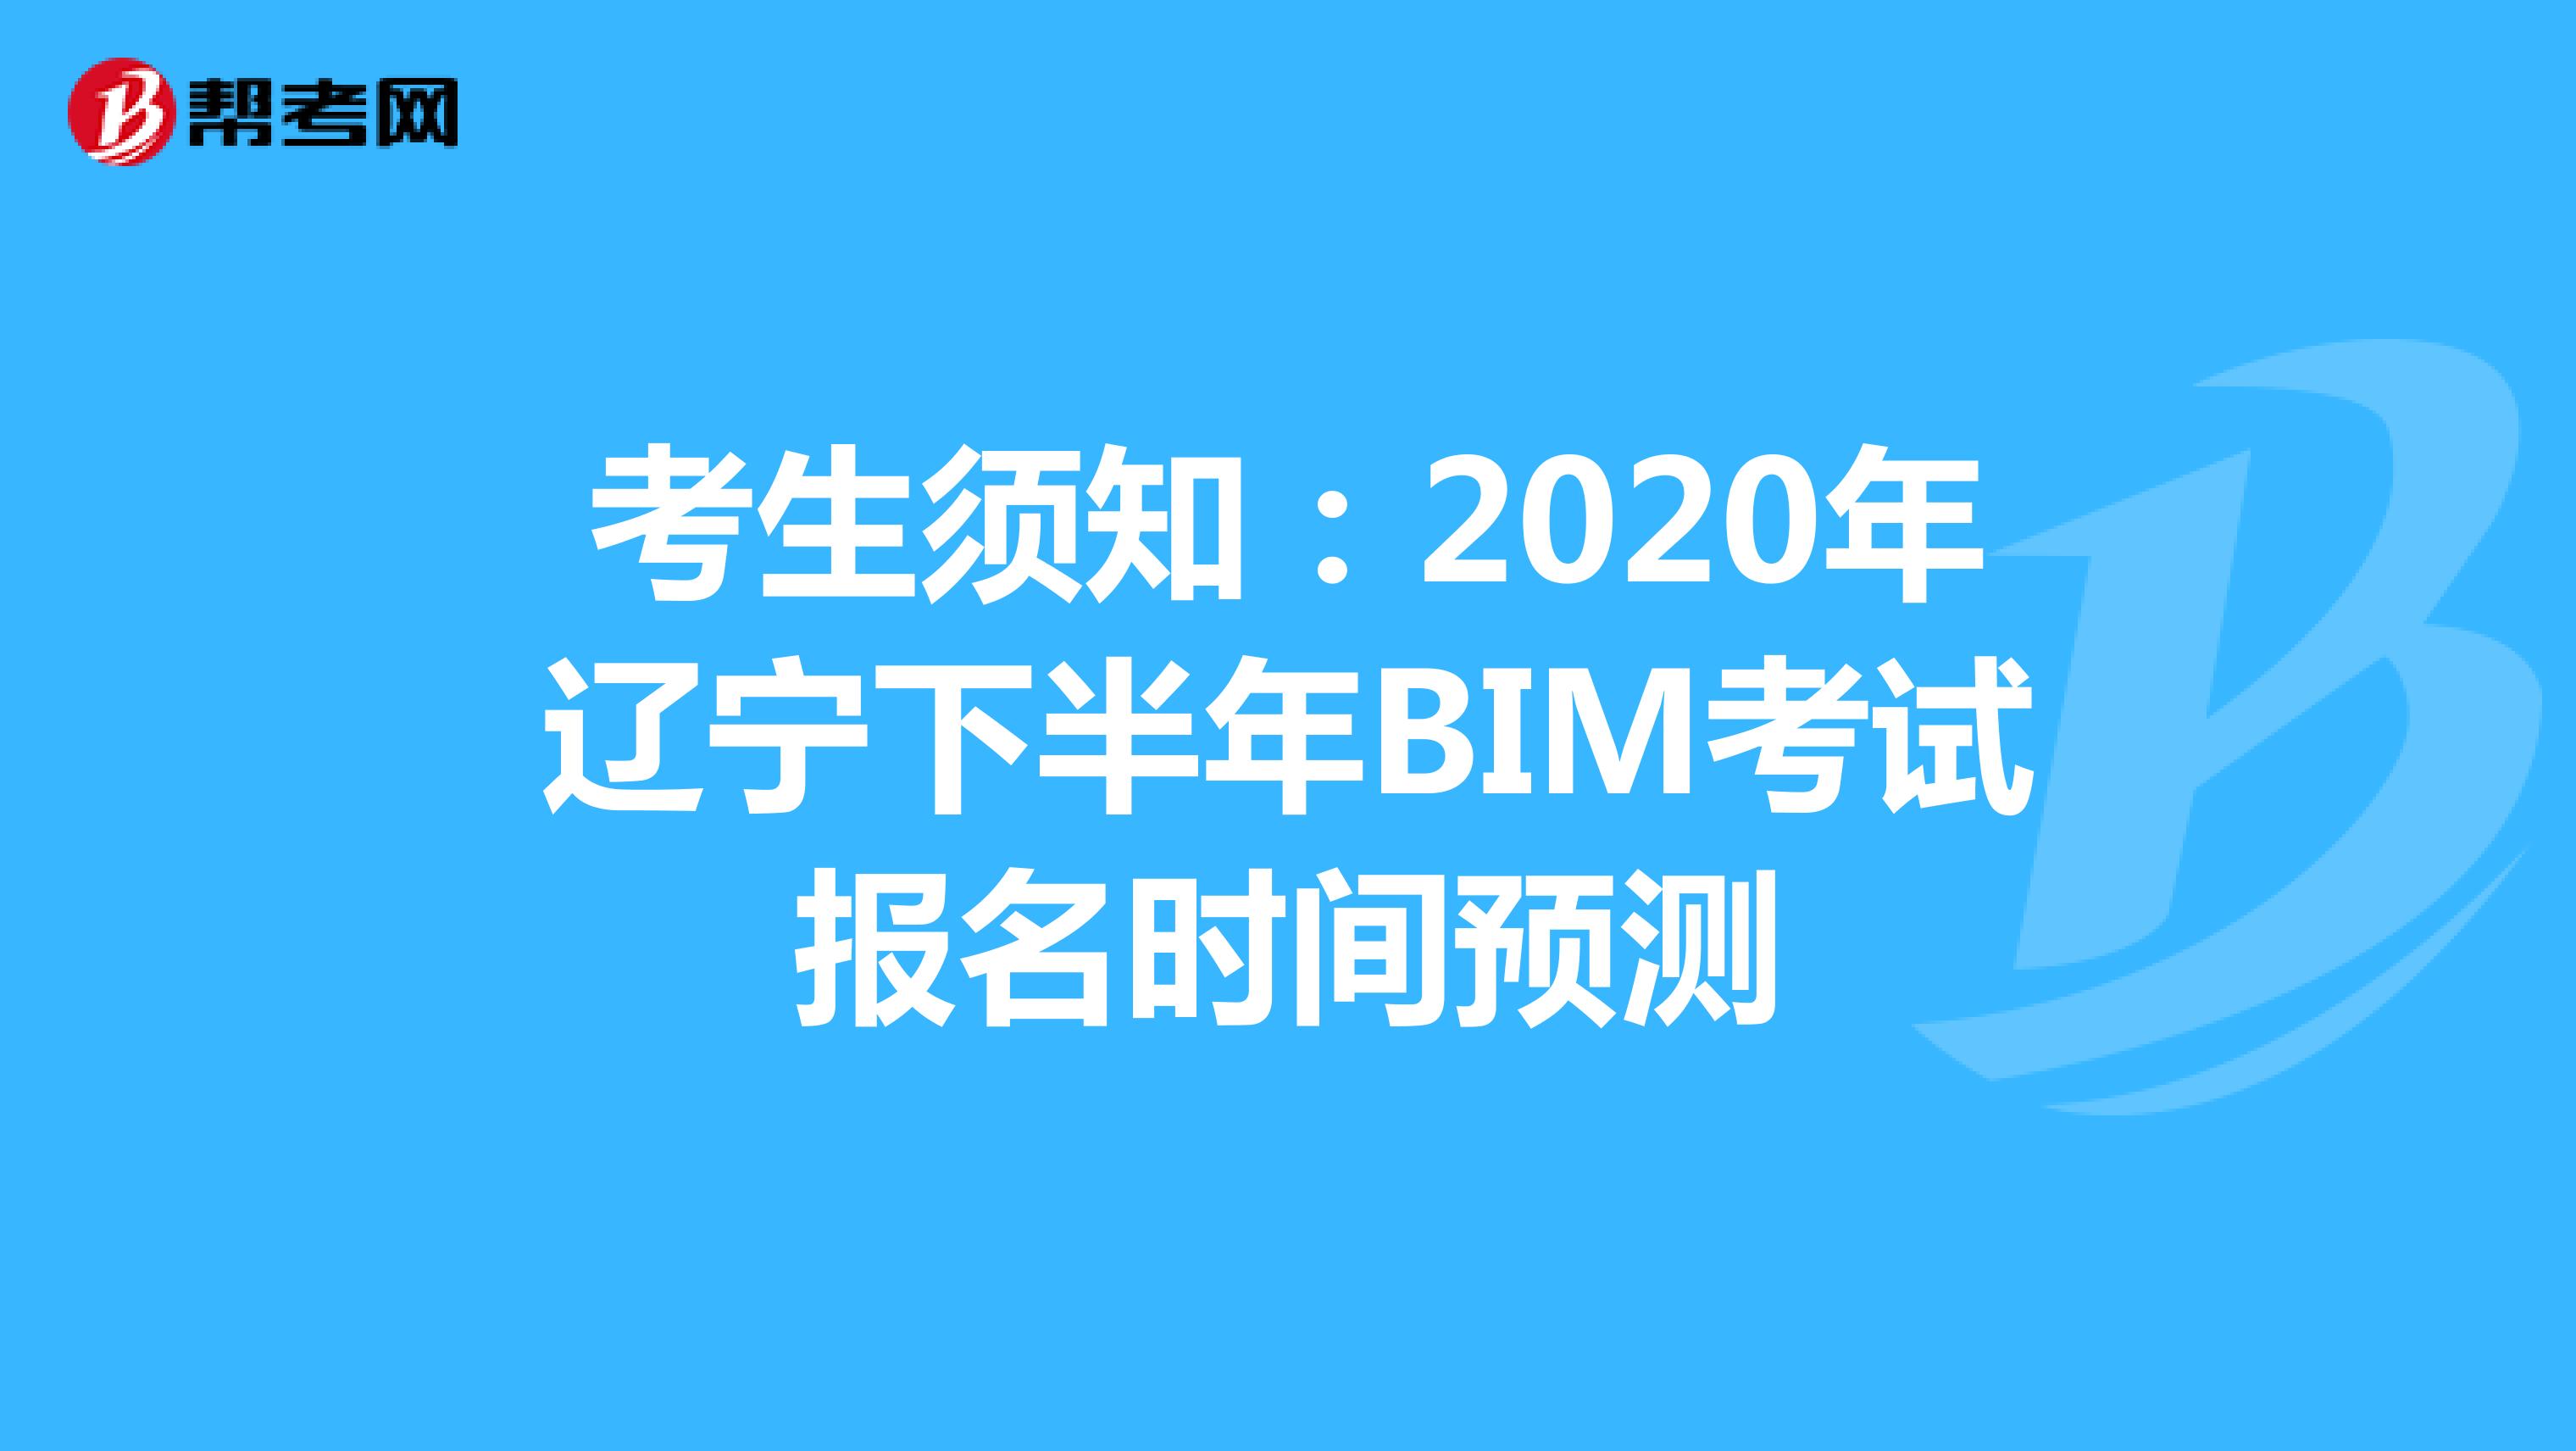 考生须知：2020年辽宁下半年BIM考试报名时间预测